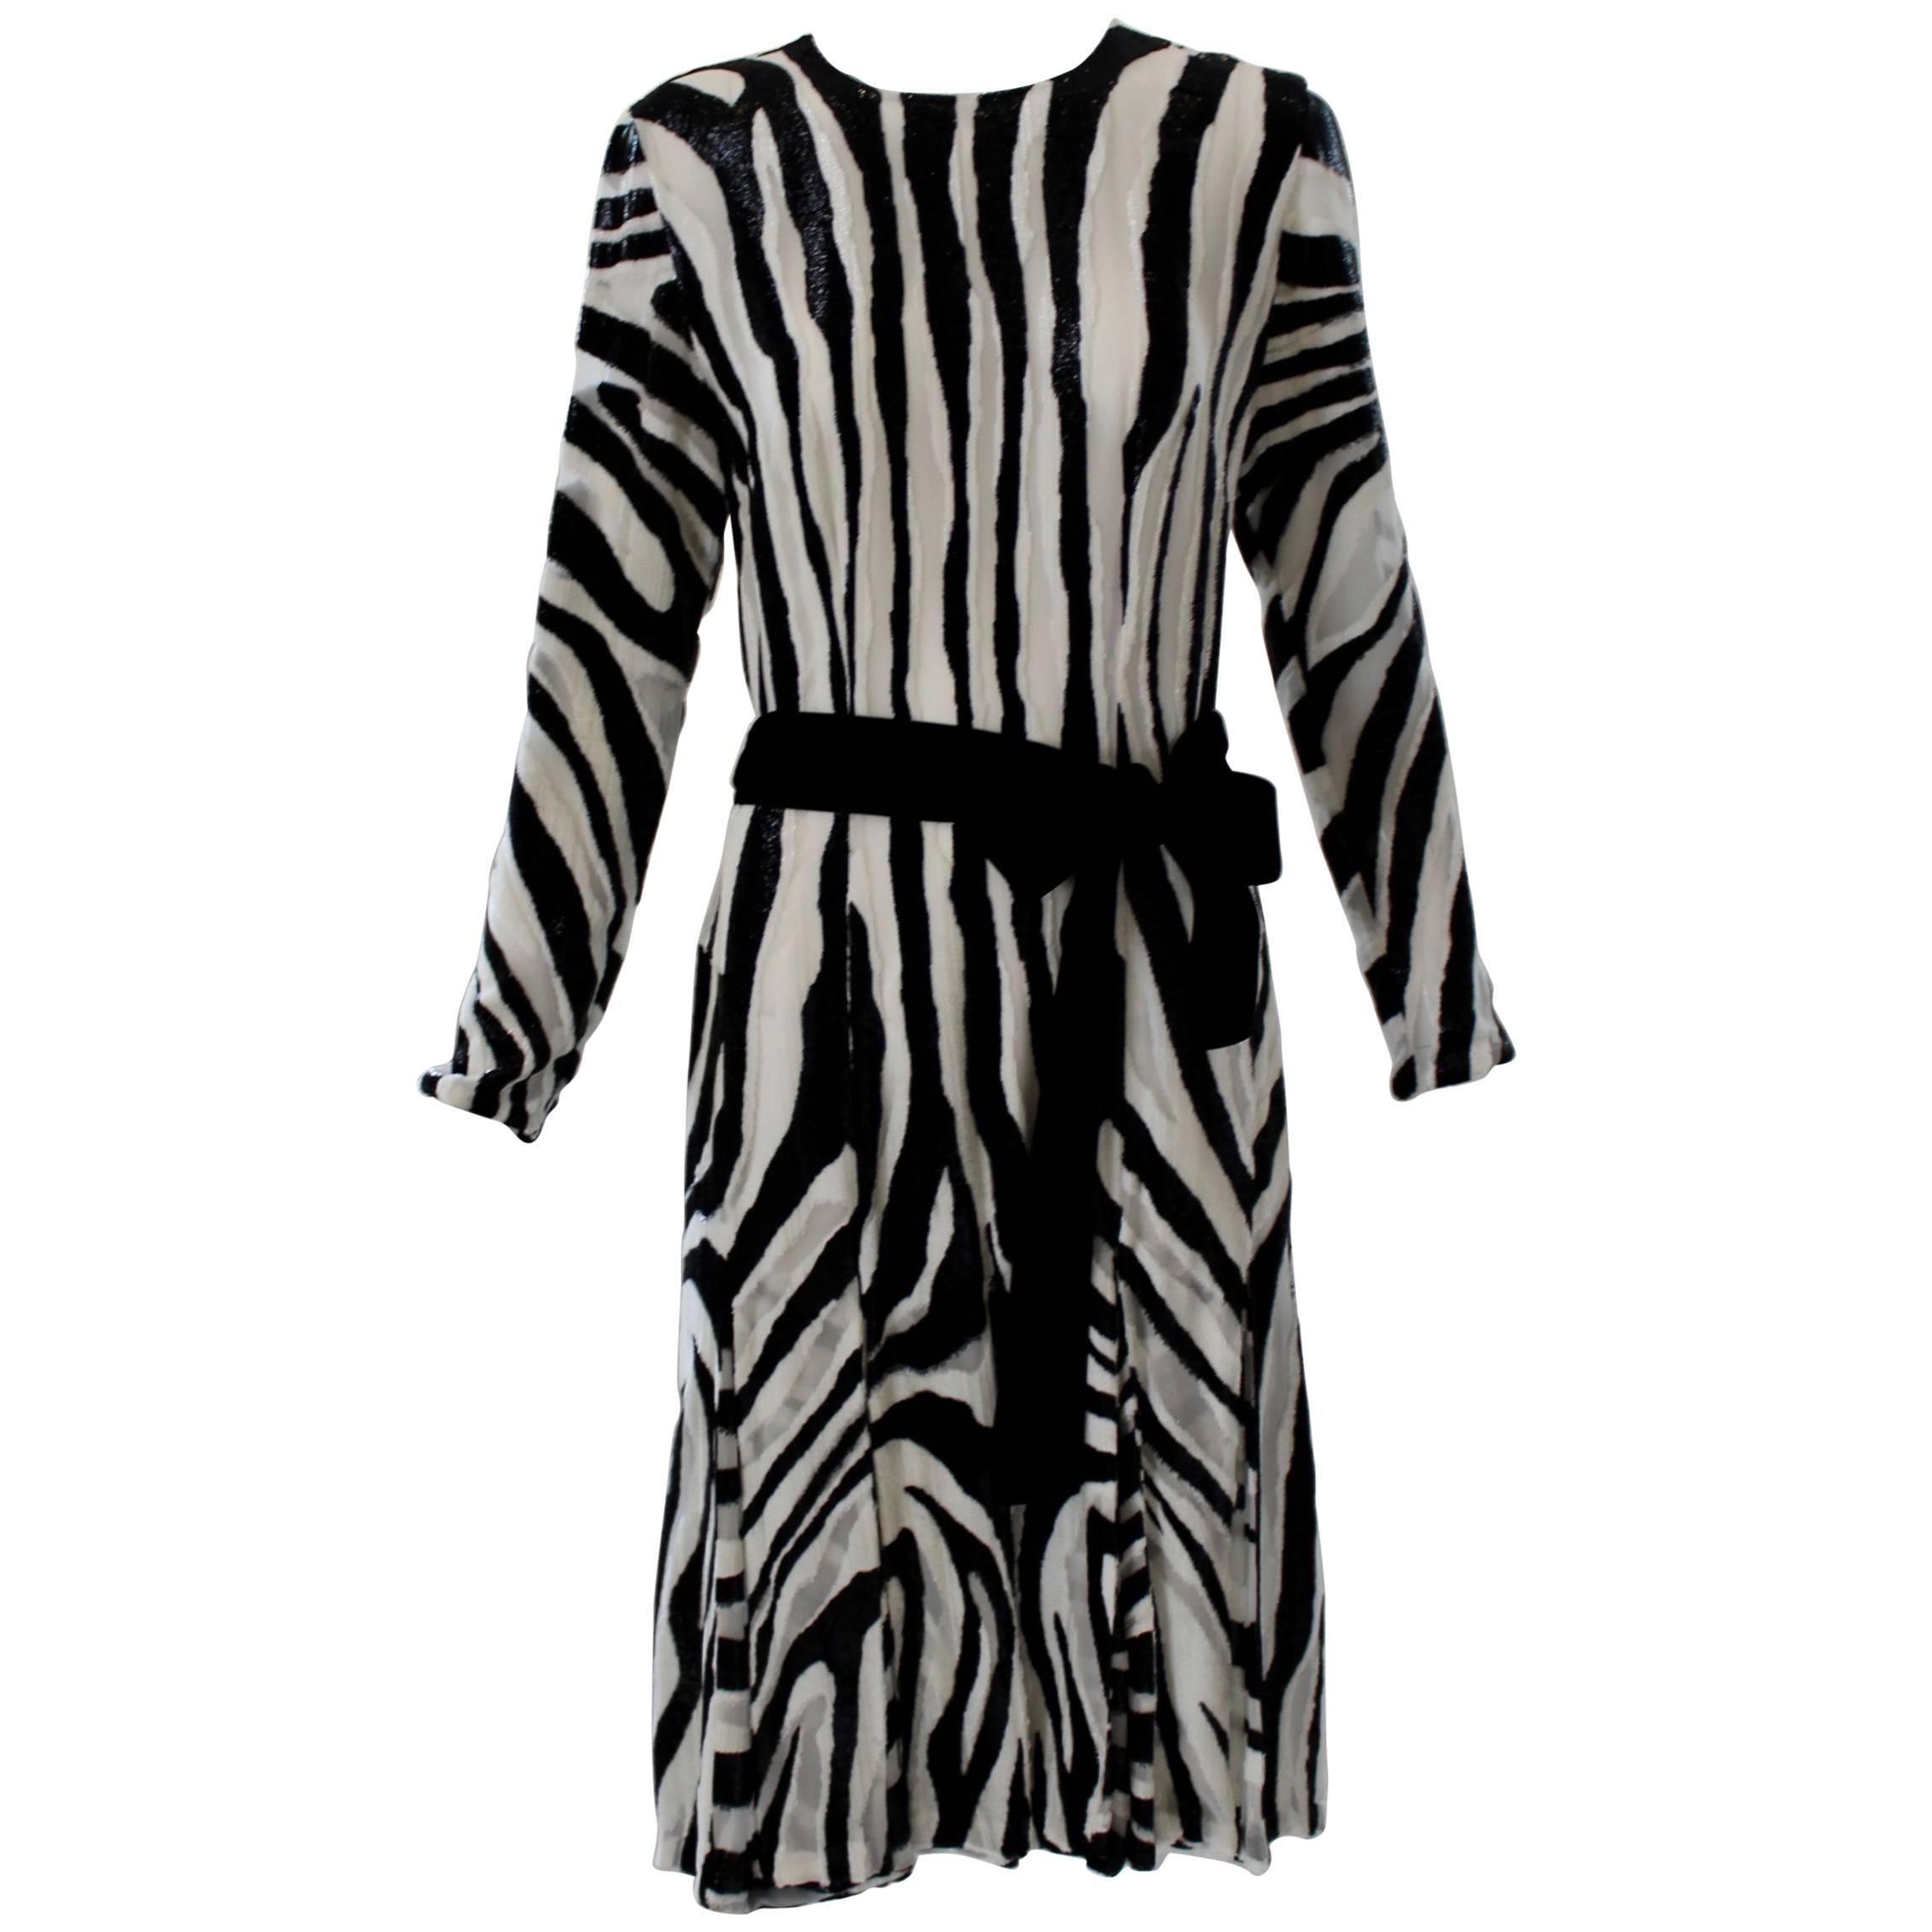 Tom Ford Zebra Print Textured Tinsel Dress